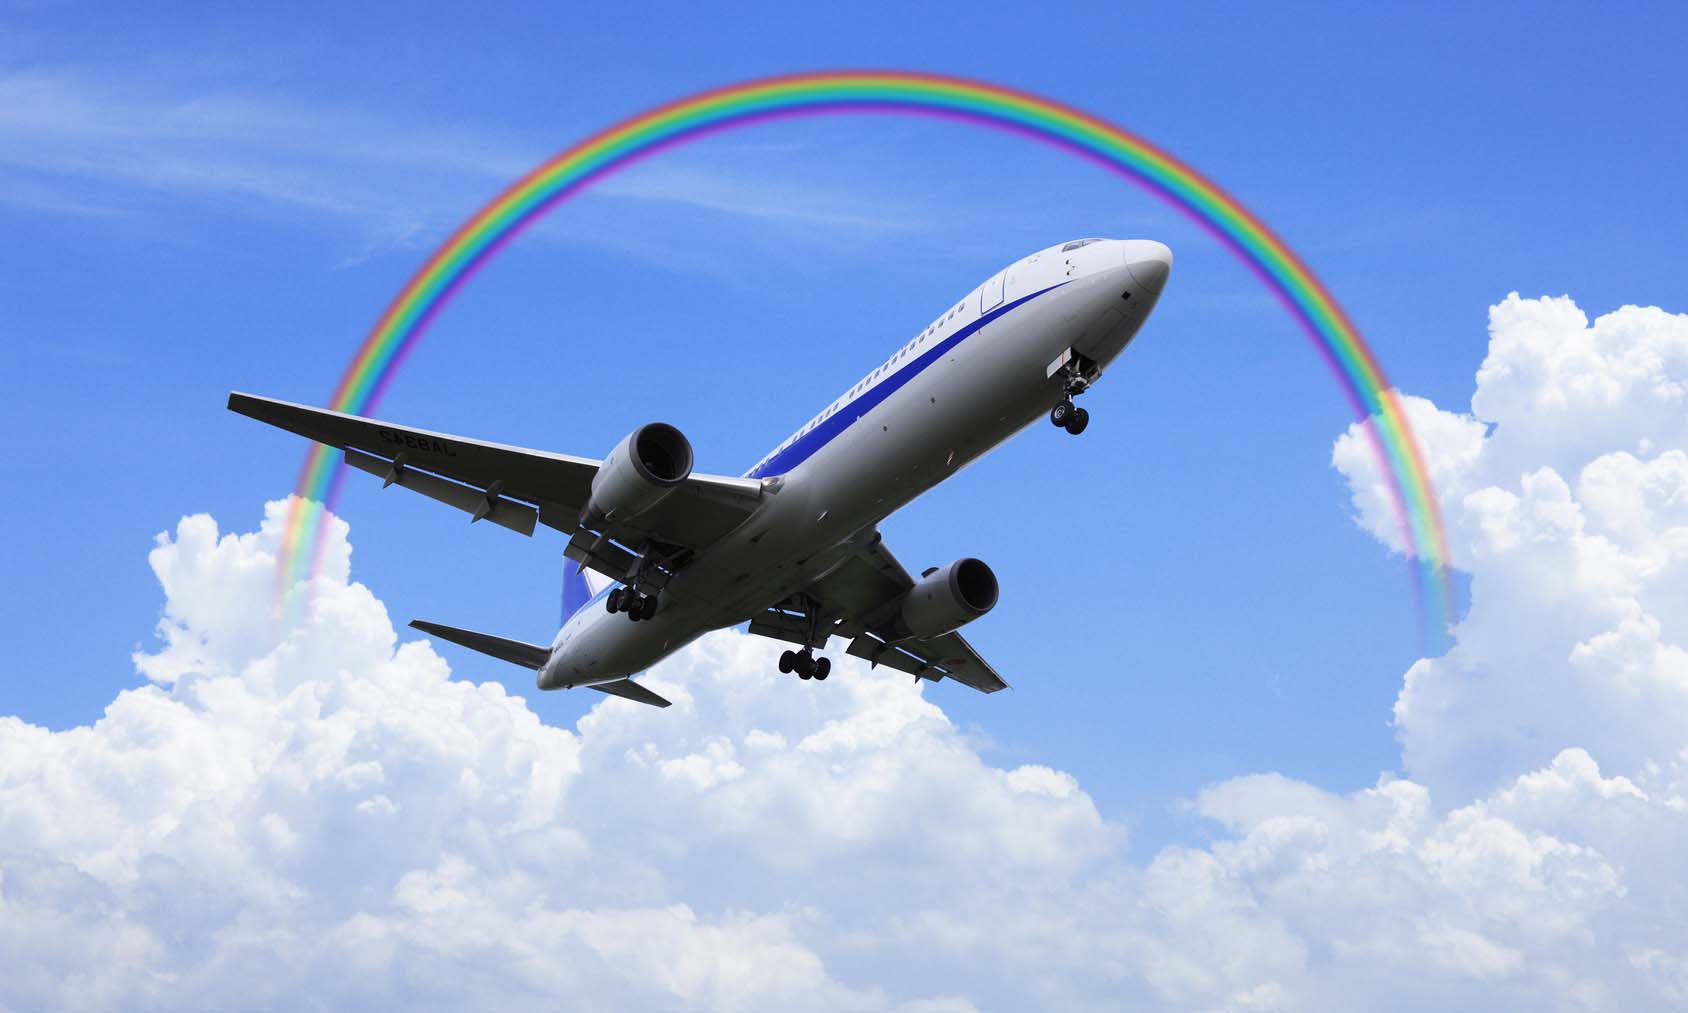 虹と飛行機